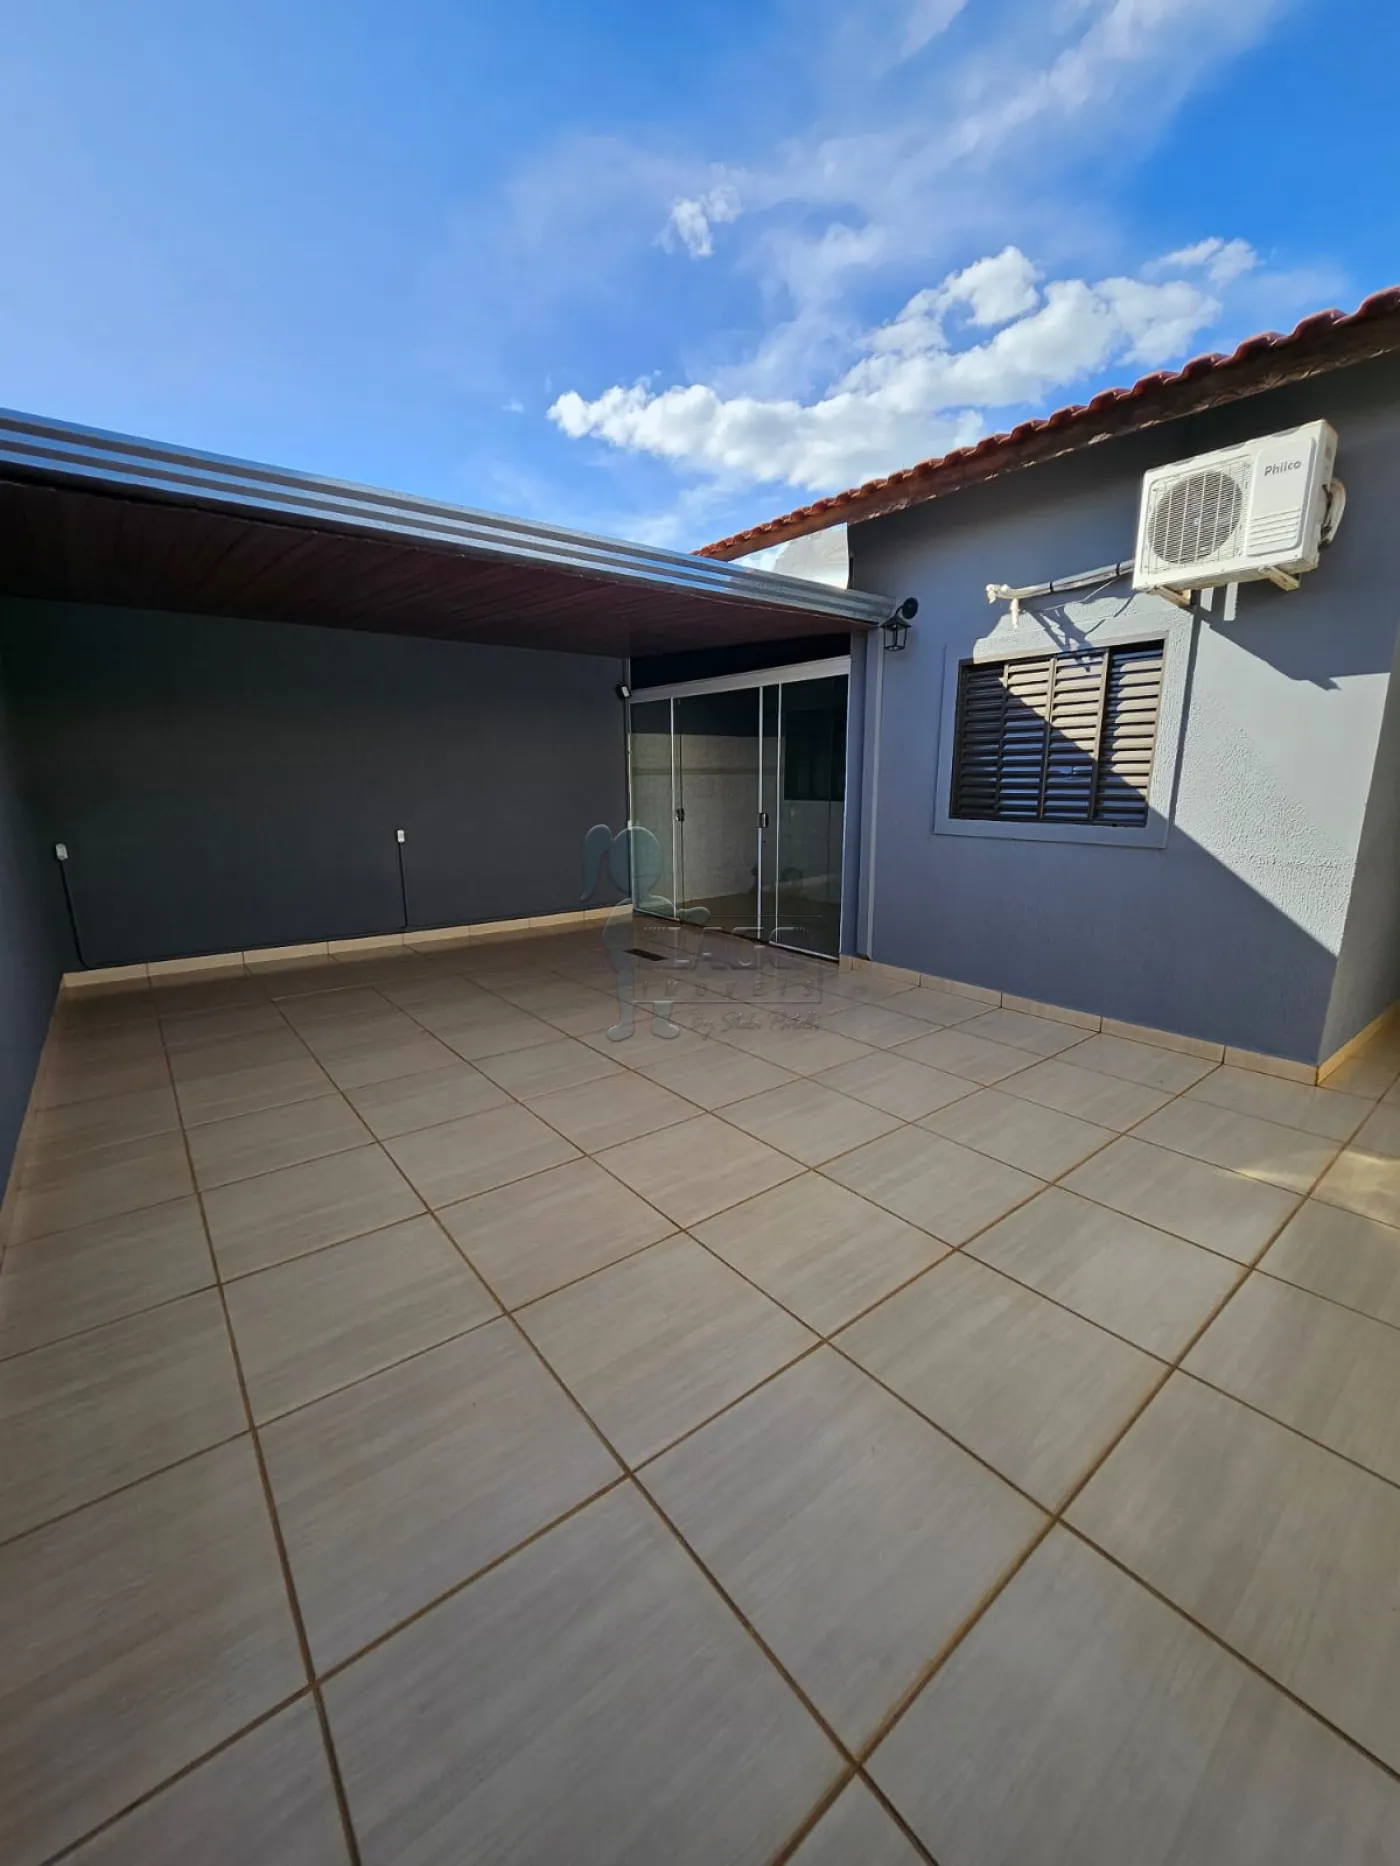 Comprar Casa / Padrão em Ribeirão Preto R$ 275.000,00 - Foto 15